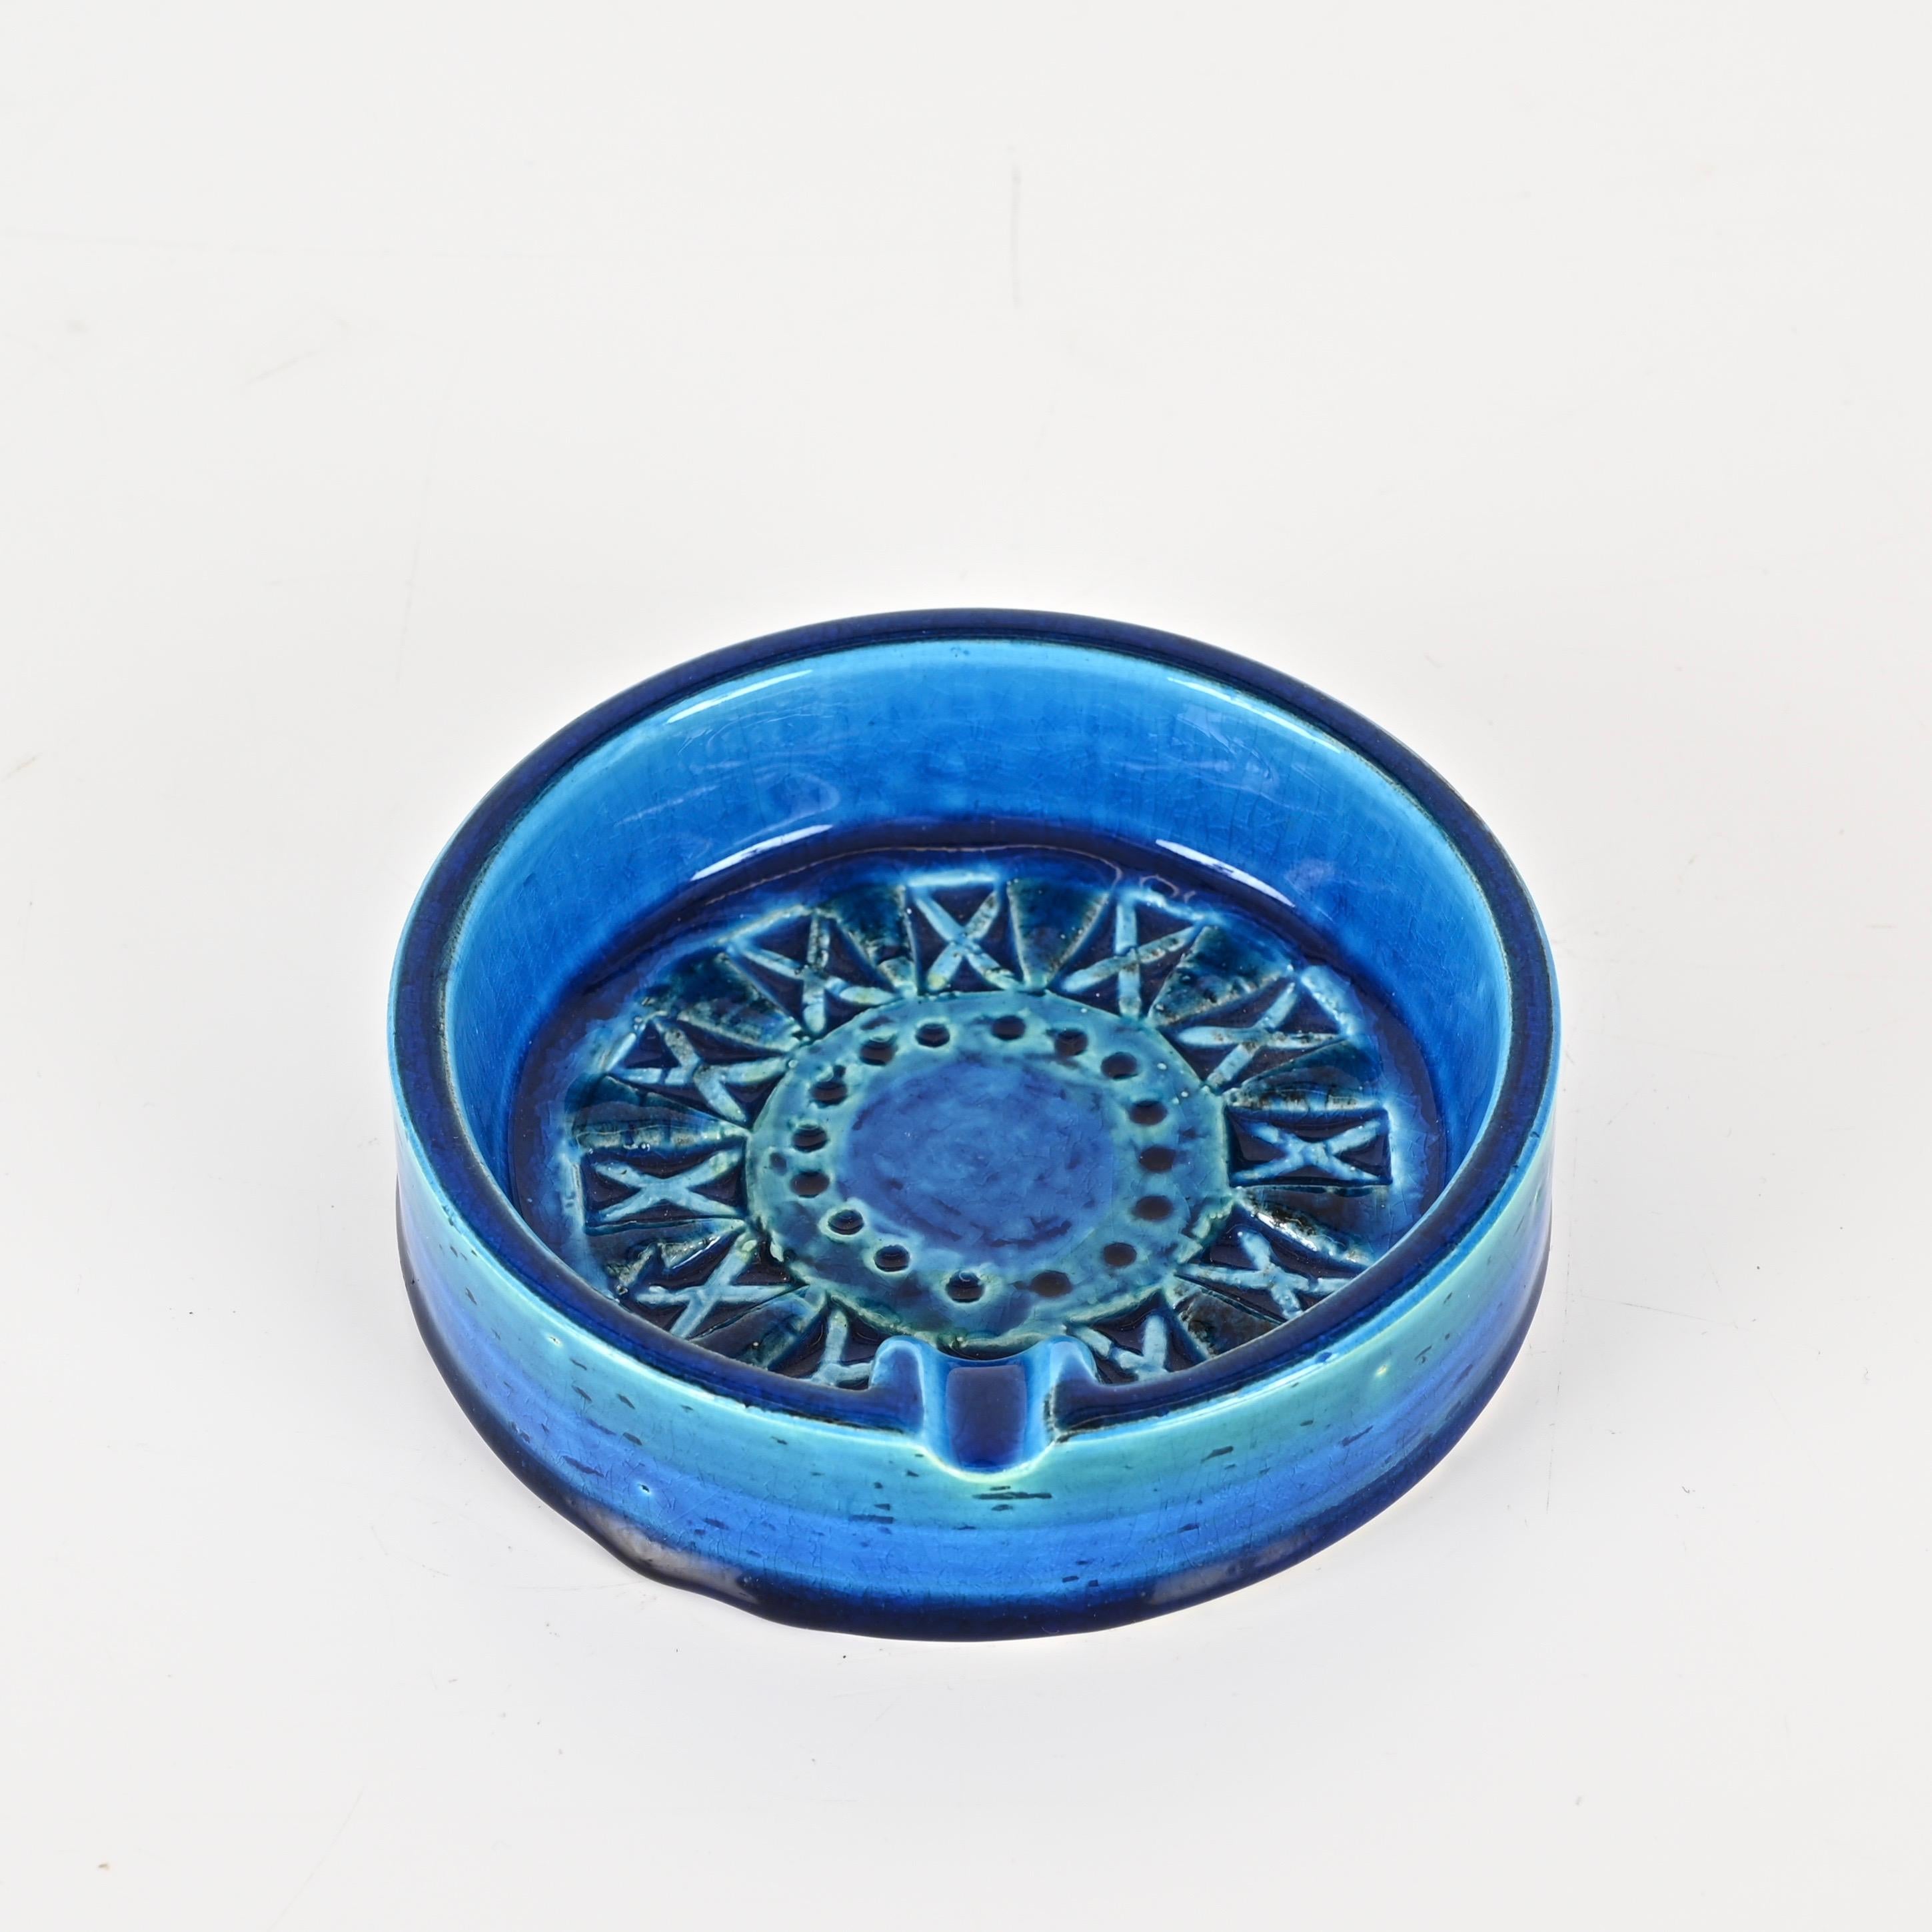 Vernissé Cendrier de Montelupo en céramique bleue 